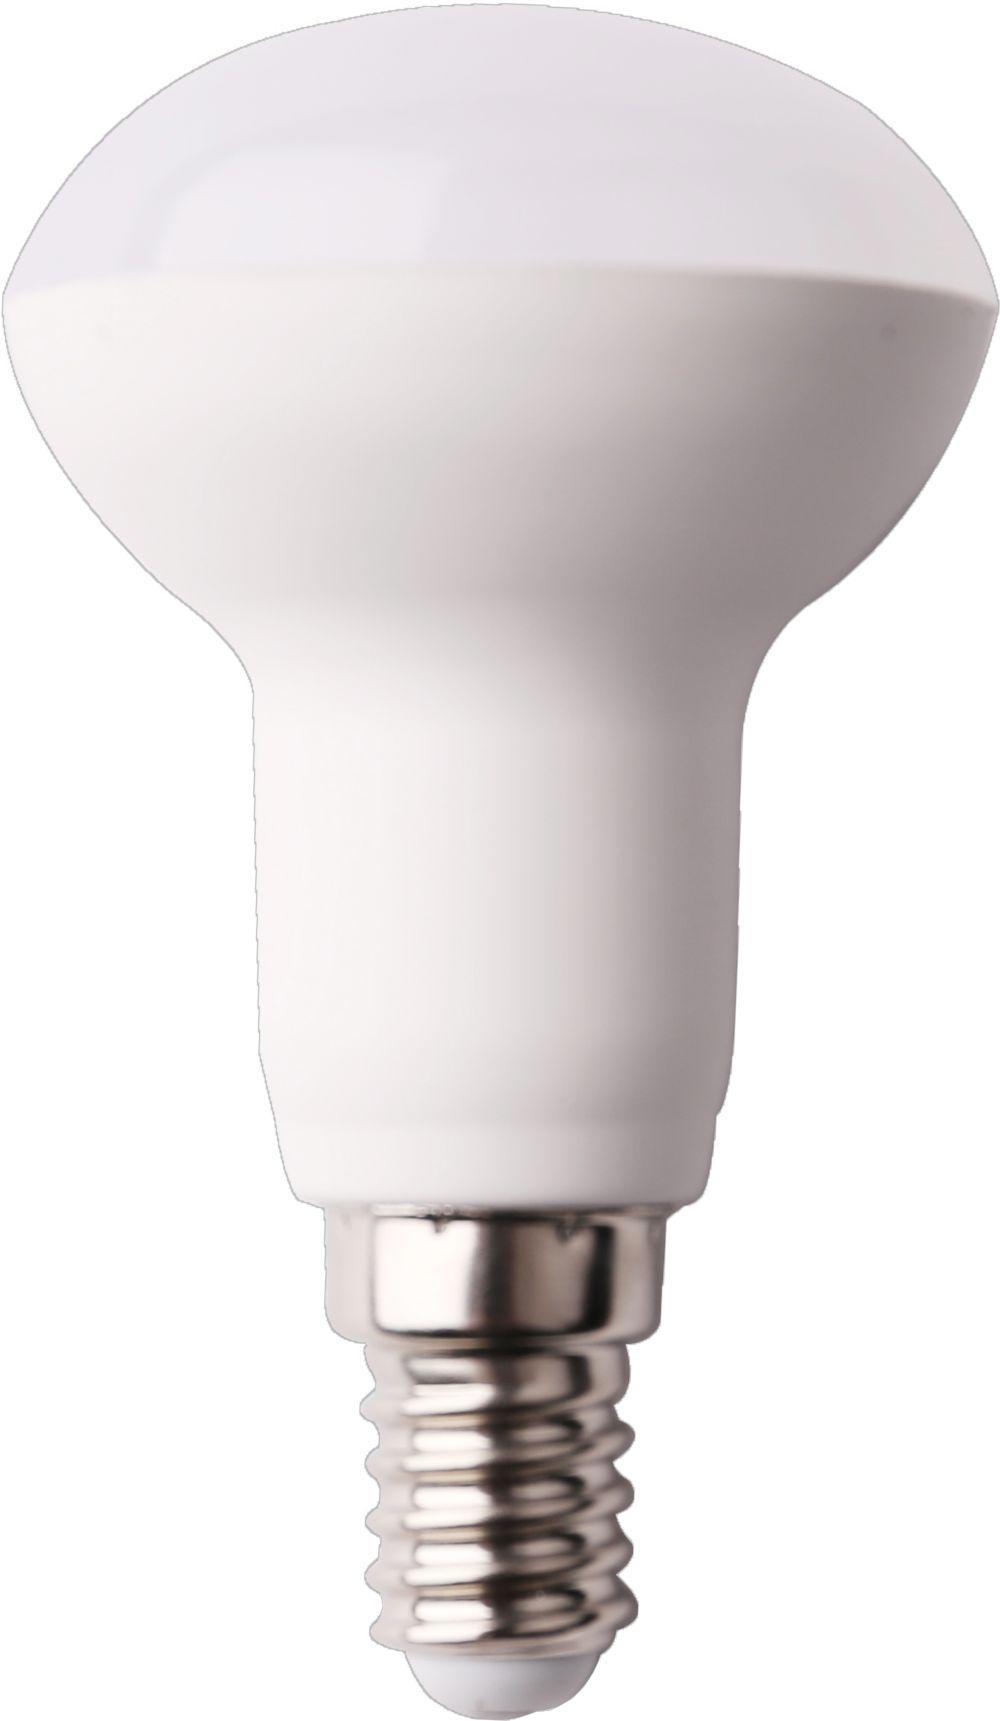 90121150 Лампа стандарт светодионая E14 8 Вт рефлекторная 640 Лм холодный свет STLM-0112350 ECOLA